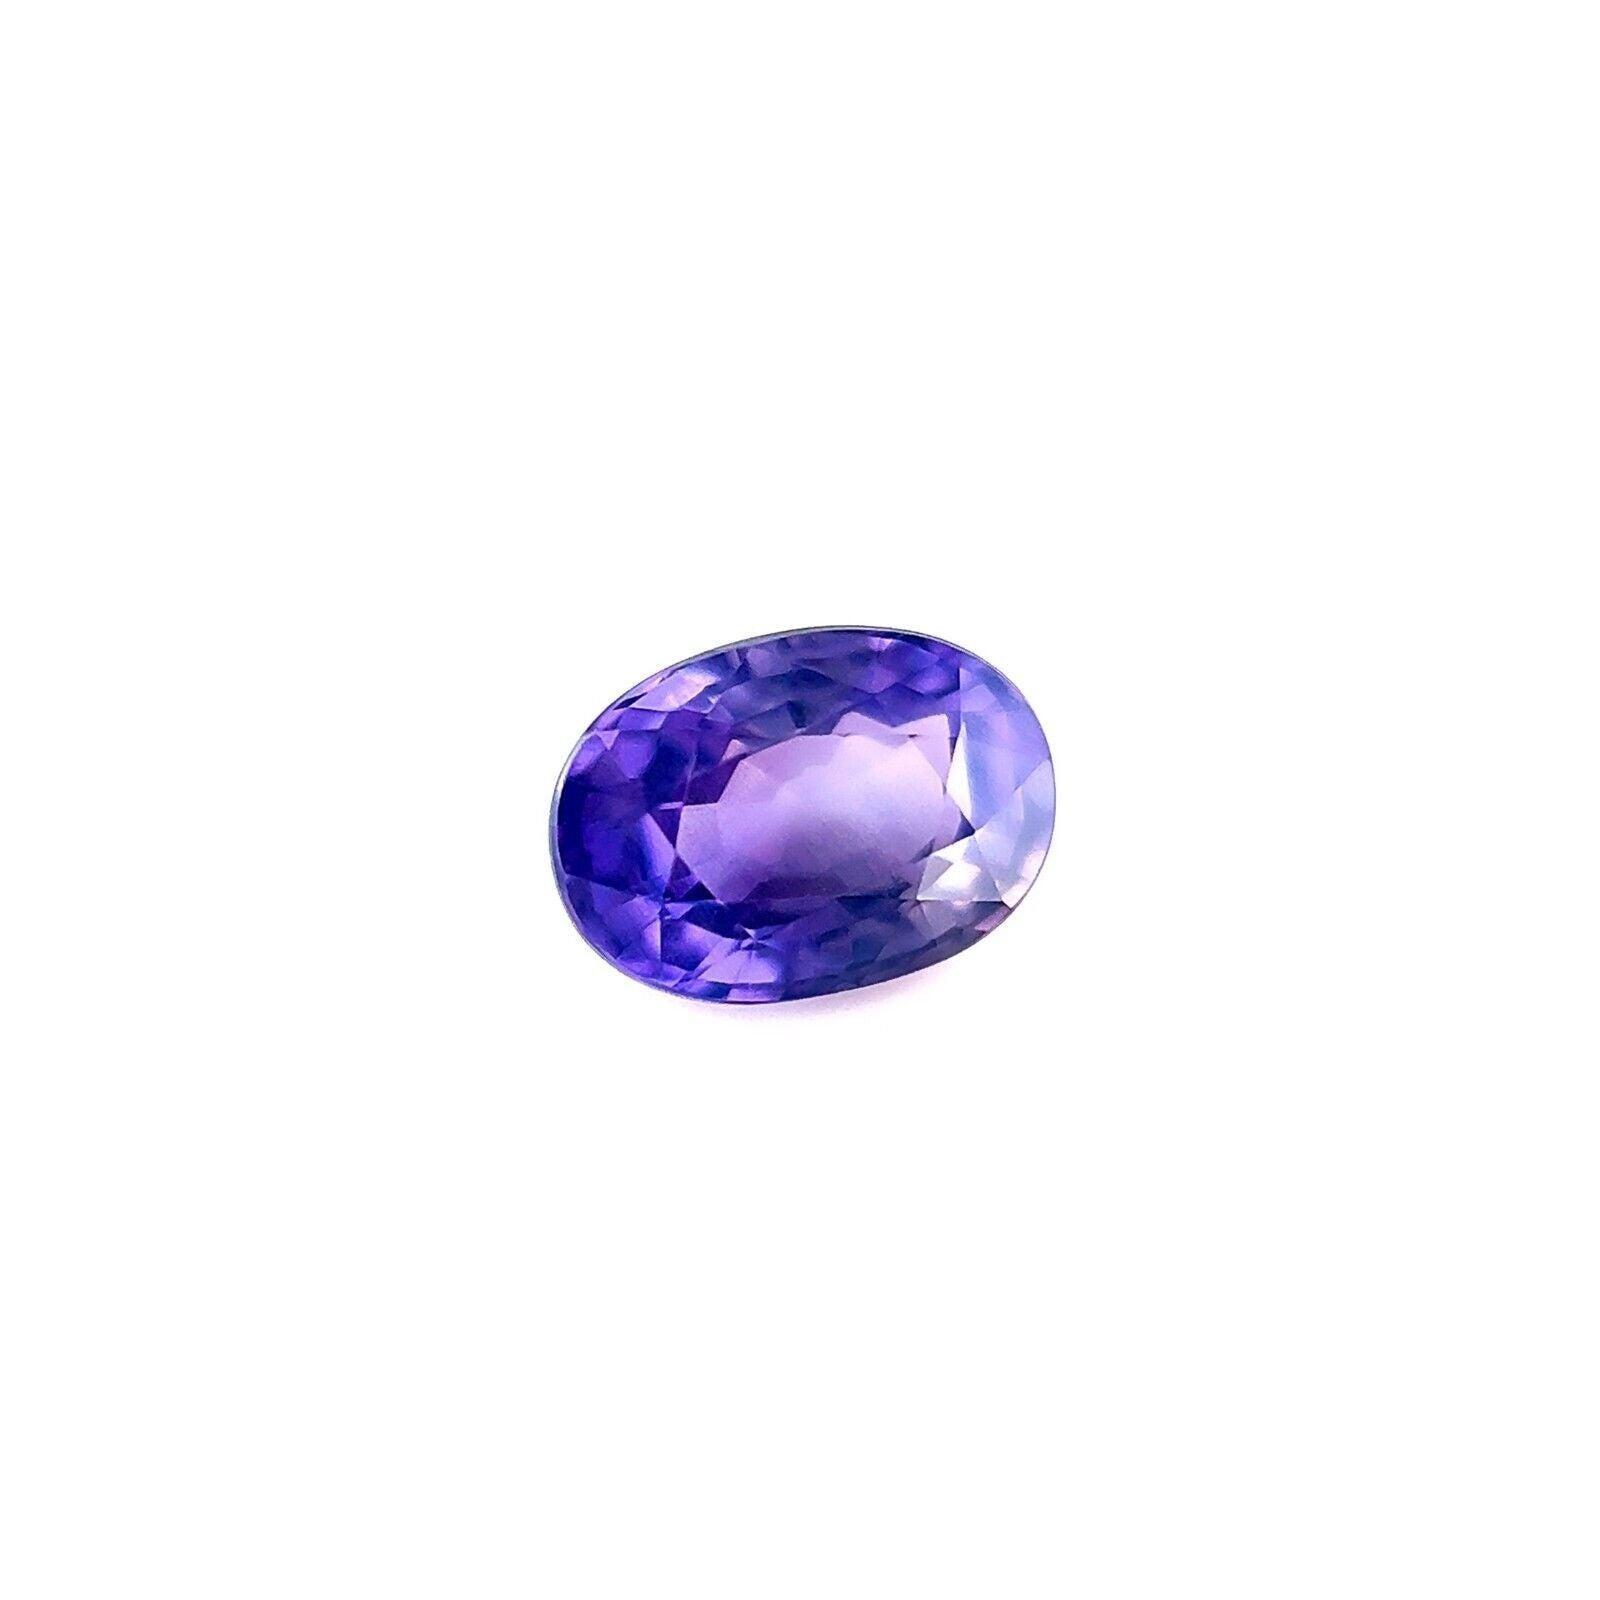 Fine 1.02ct Sapphire GIA Certified Purple Lilac Untreated Oval Cut Gem 6.6X4.7mm

GIA Certified Untreated Vivid Lilac Purple Sapphire Gemstone (pierre précieuse non traitée de saphir violet lilas).
Saphir naturel de 1,02 carat d'une belle couleur